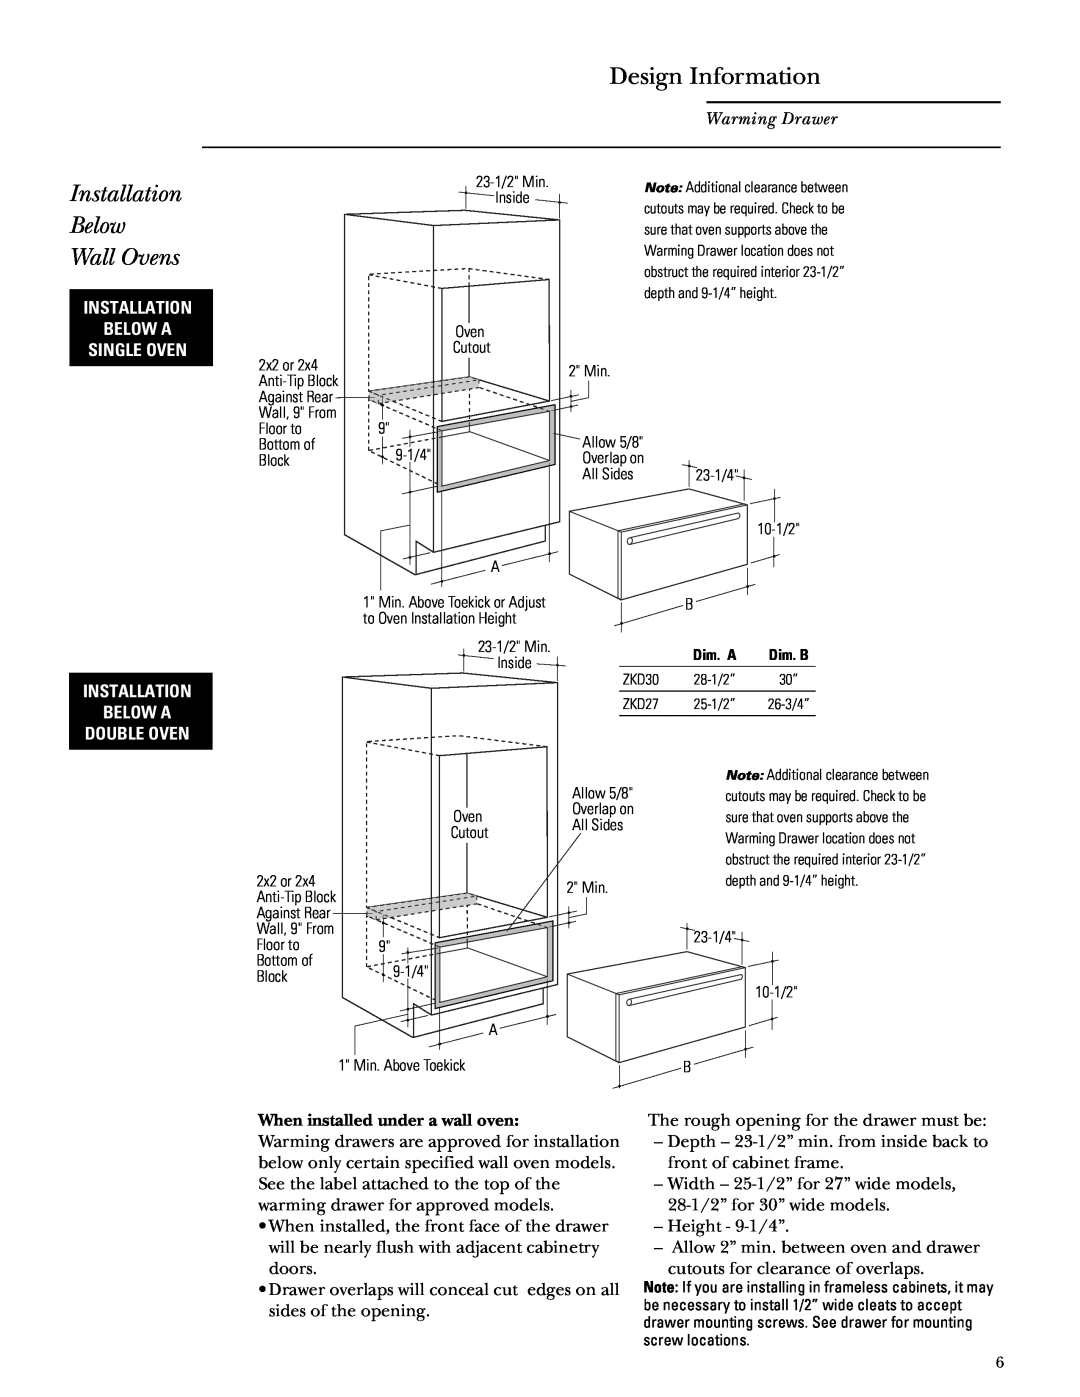 GE Monogram ZTD910, ZKD910 installation instructions Installation Below Wall Ovens, Design Information, Warming Drawer 